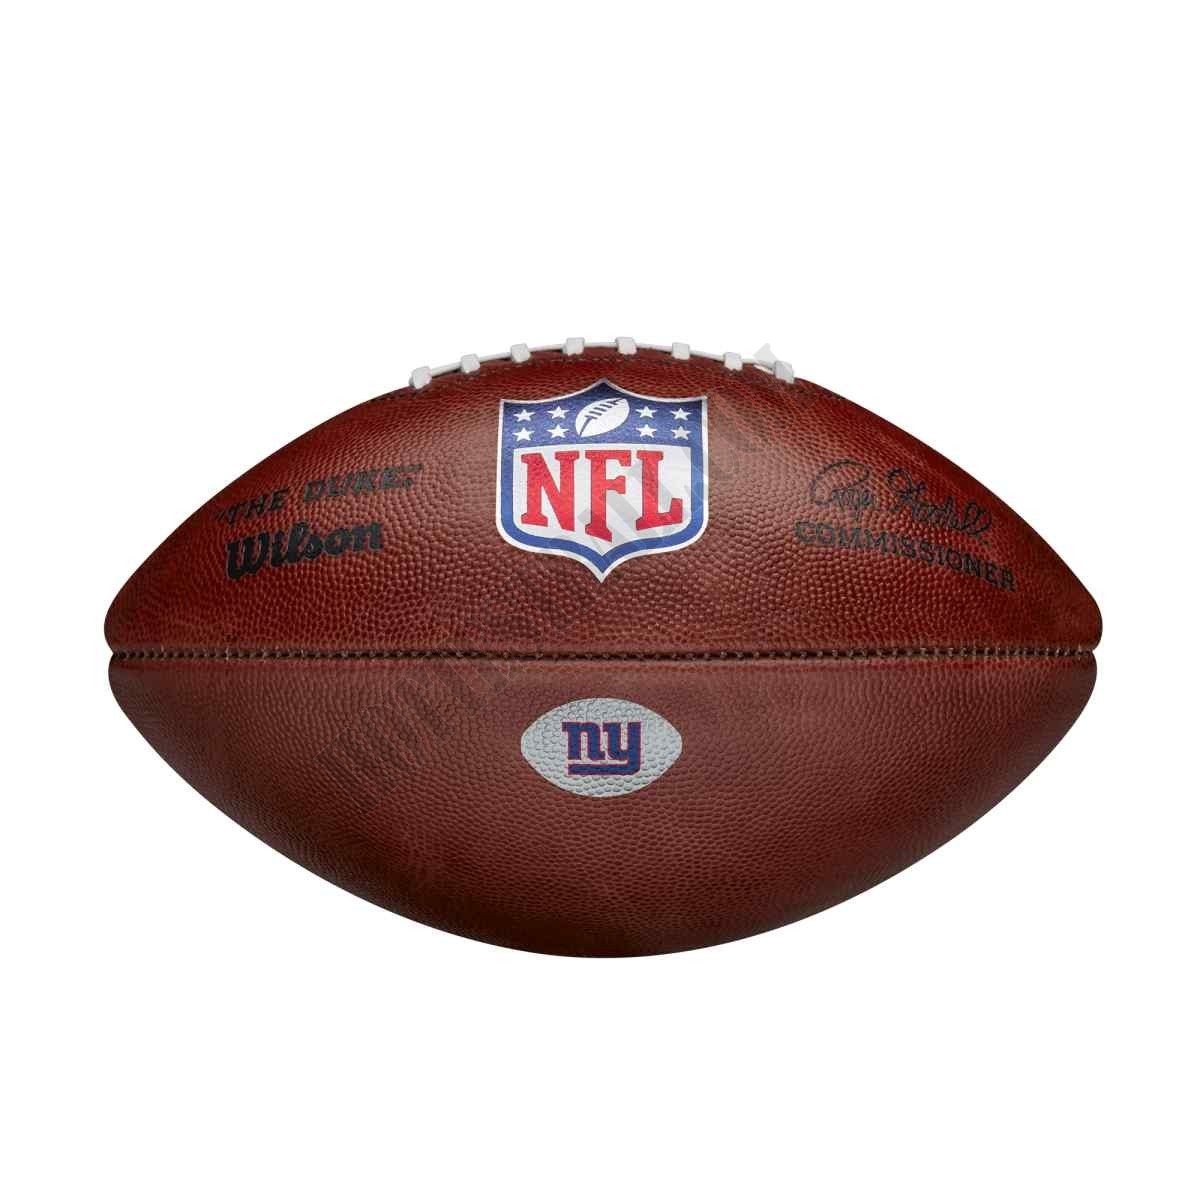 The Duke Decal NFL Football - New York Giants ● Wilson Promotions - The Duke Decal NFL Football - New York Giants ● Wilson Promotions